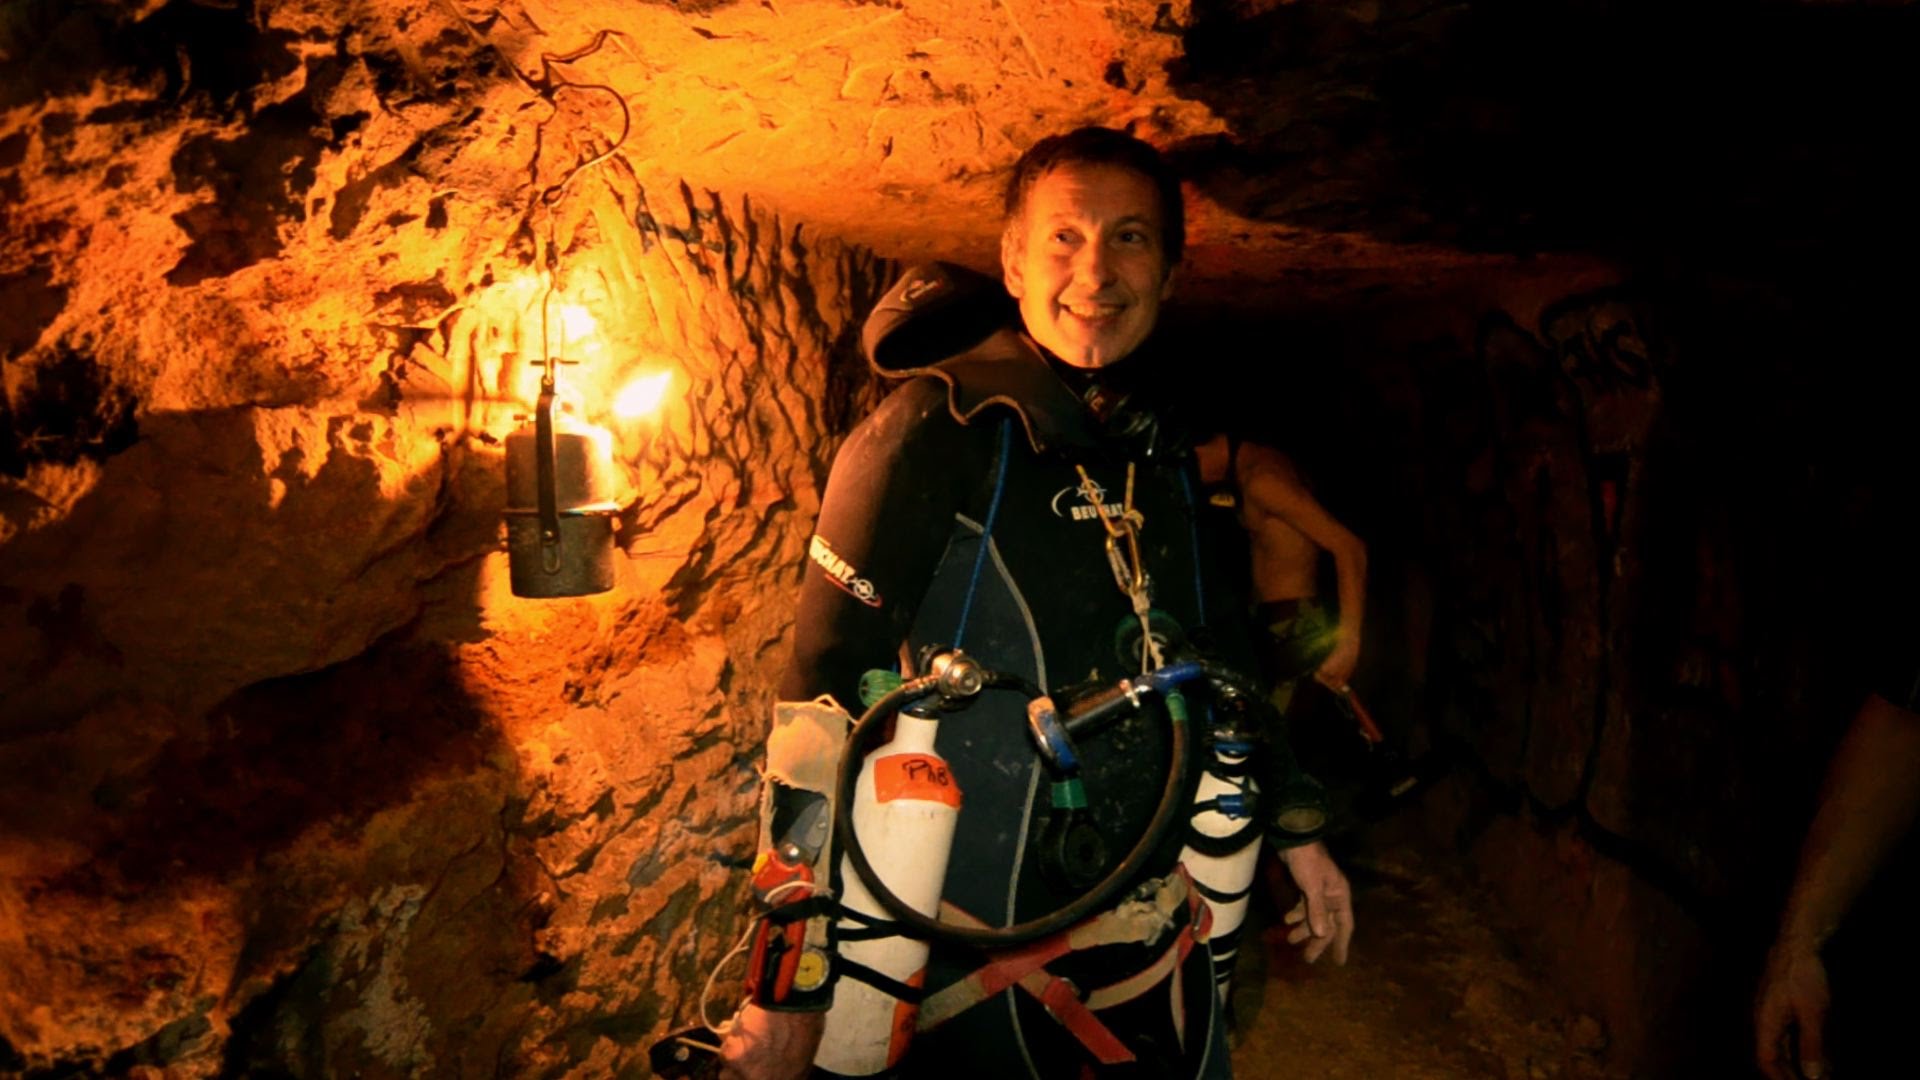 Βίντεο: Γάλλοι εξερευνητές ανακάλυψαν ακόμα και υπόγειες πισίνες στις κατακόμβες κάτω από το Παρίσι!